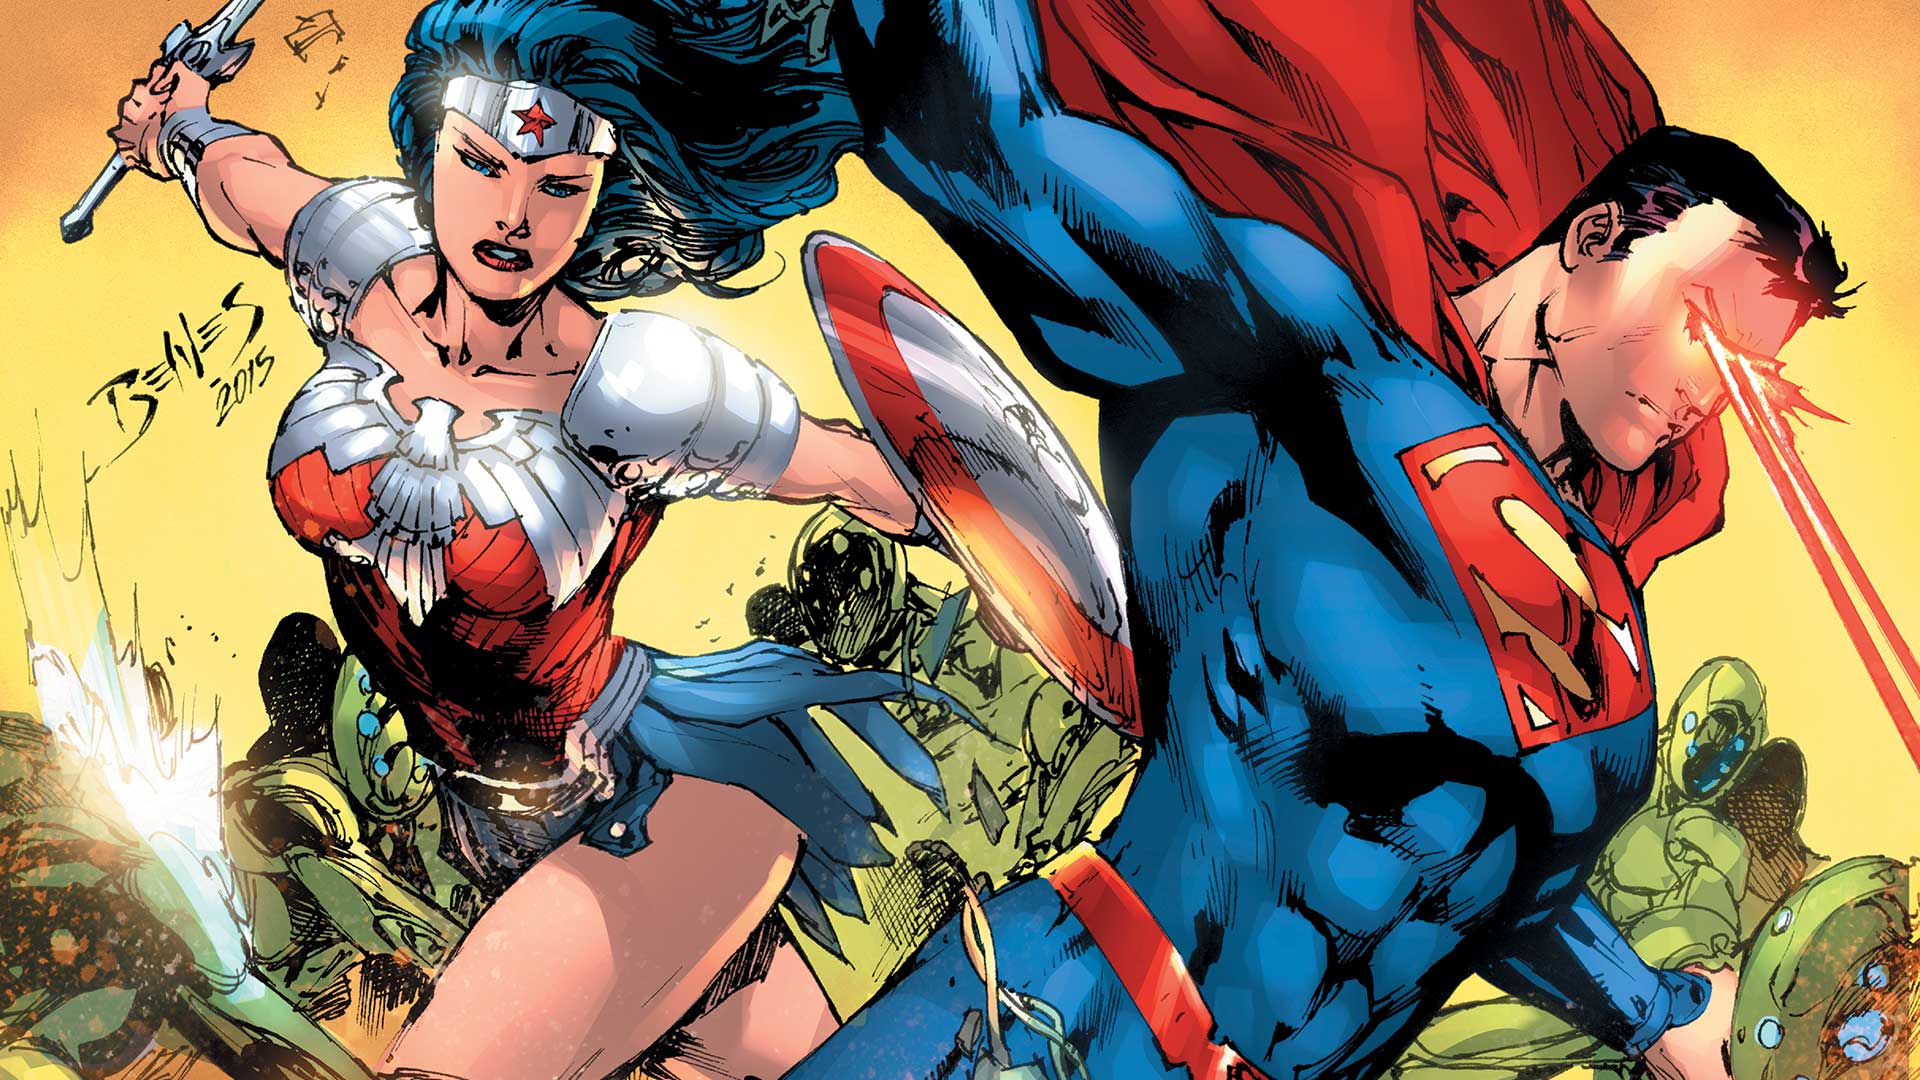 Superman & Wonder Woman & Wonder Woman Wallpaper